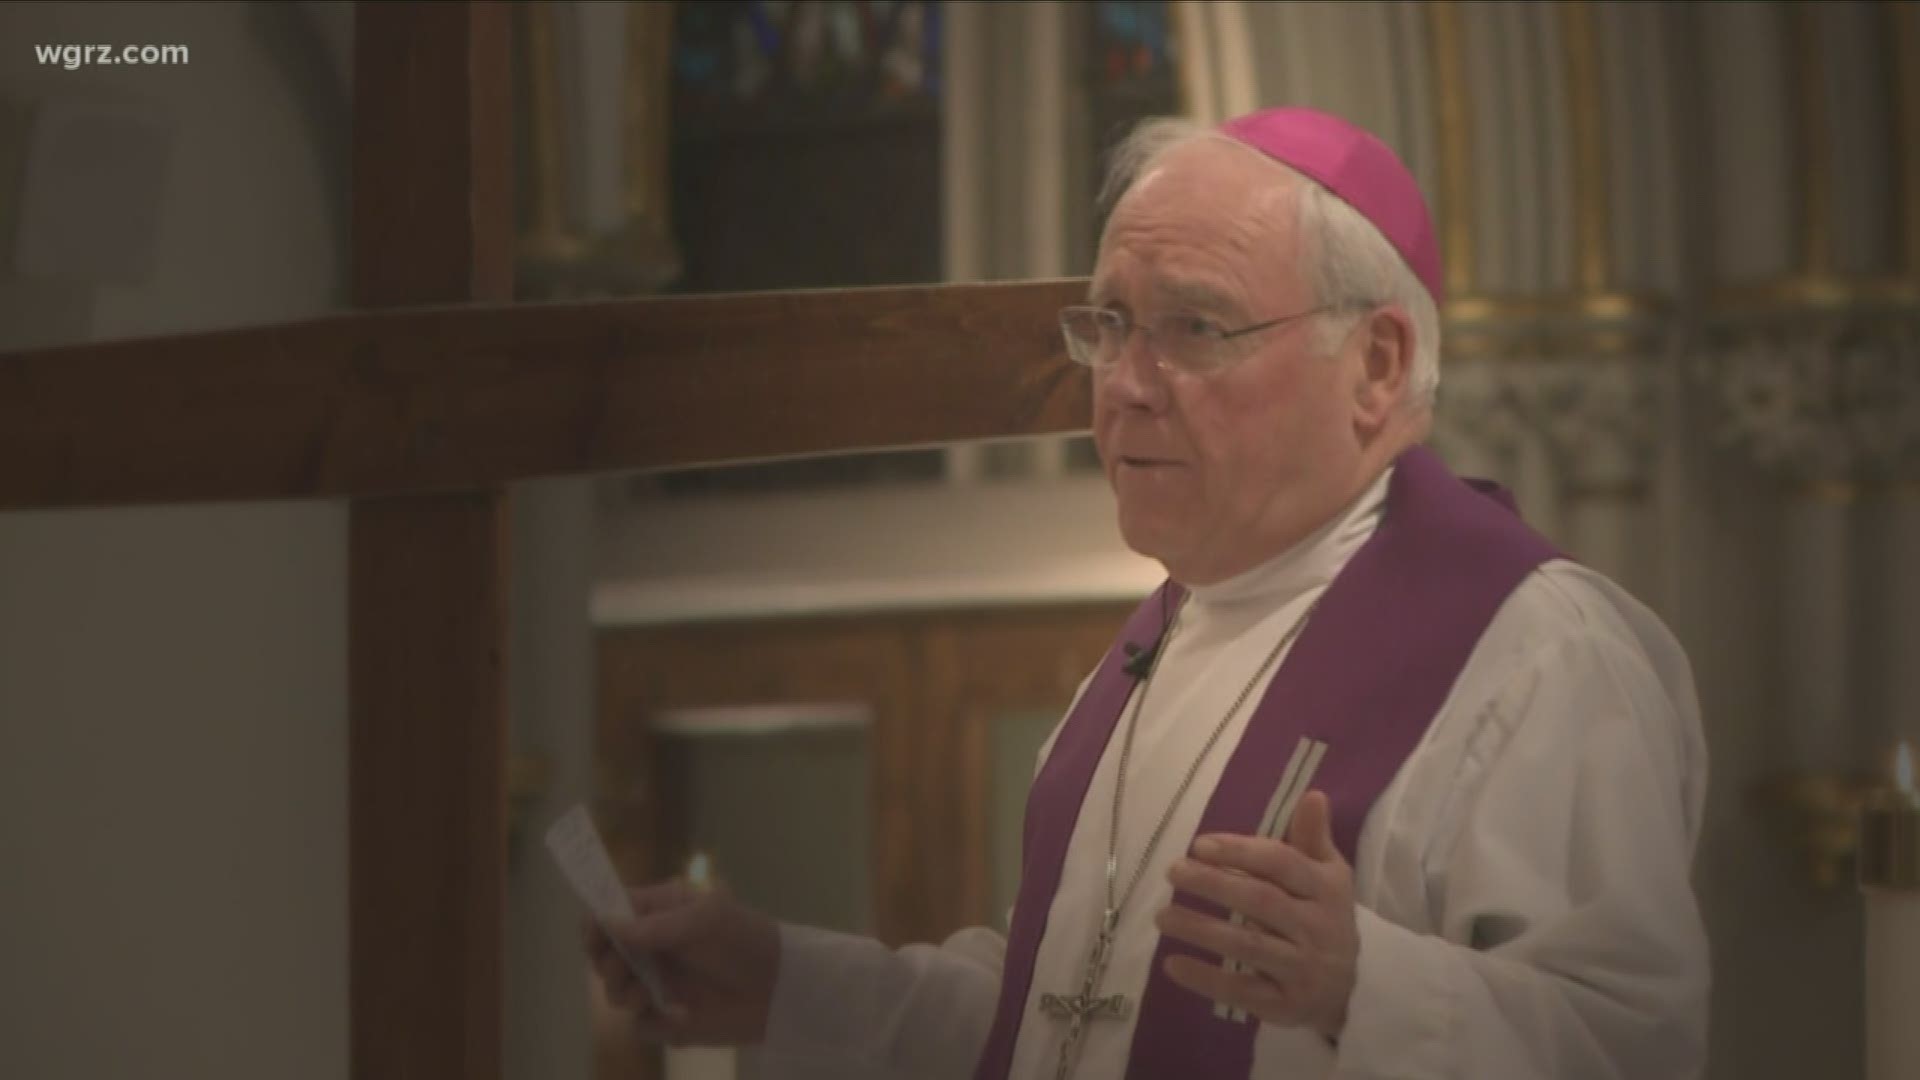 NYC Cardinal investigating Bishop Malone